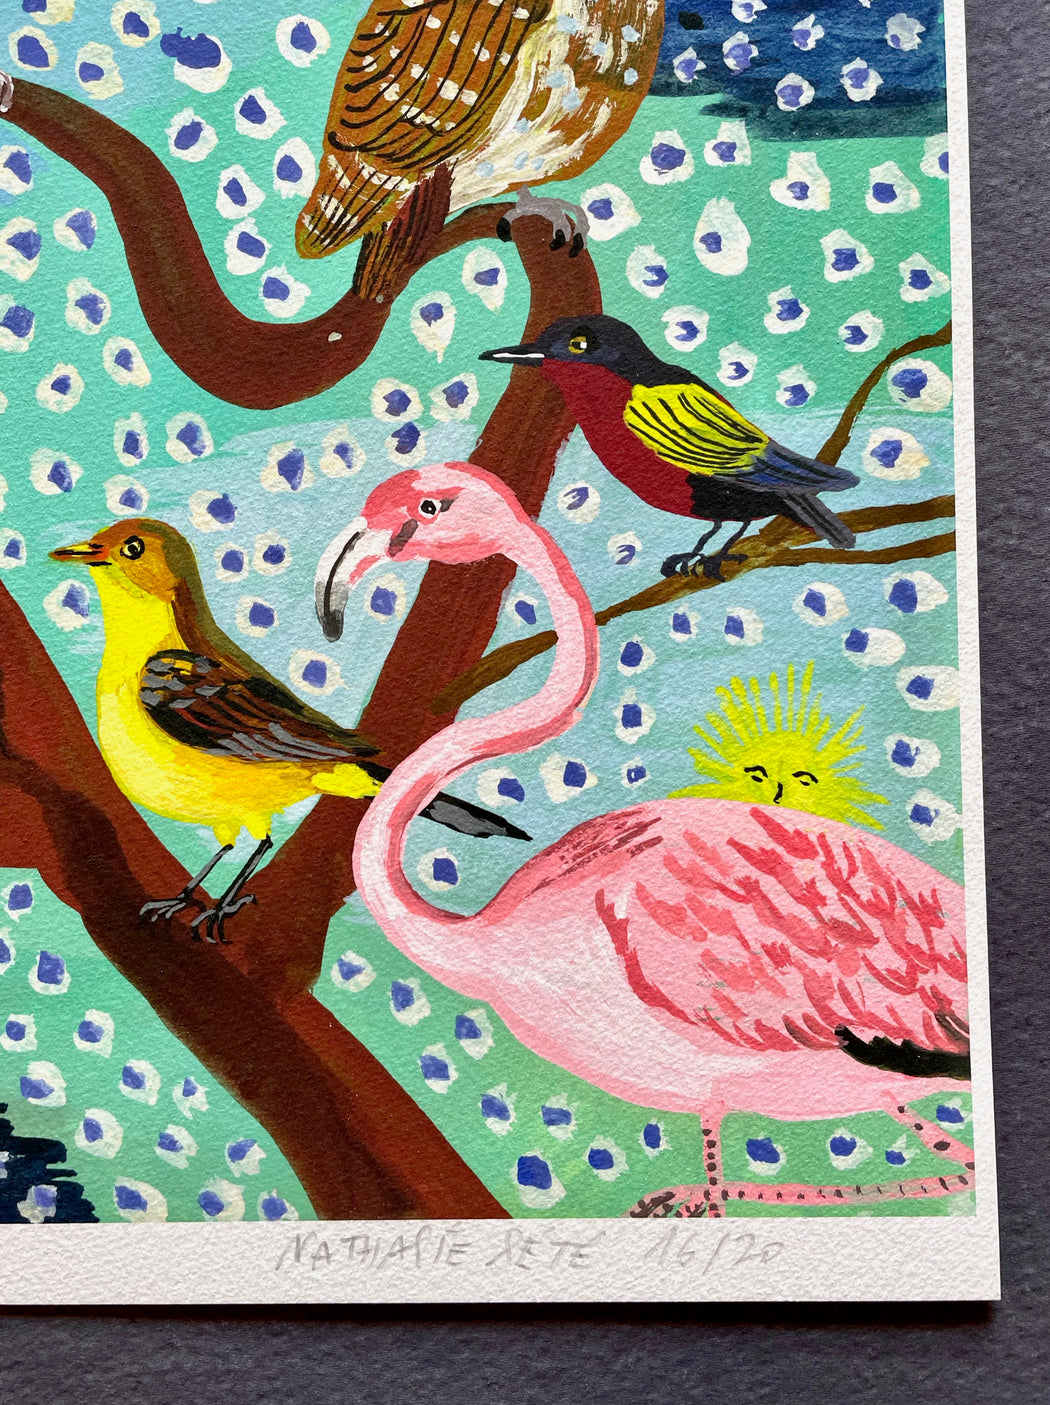 Nathalie Lete "Birds" Large Framed Art Print